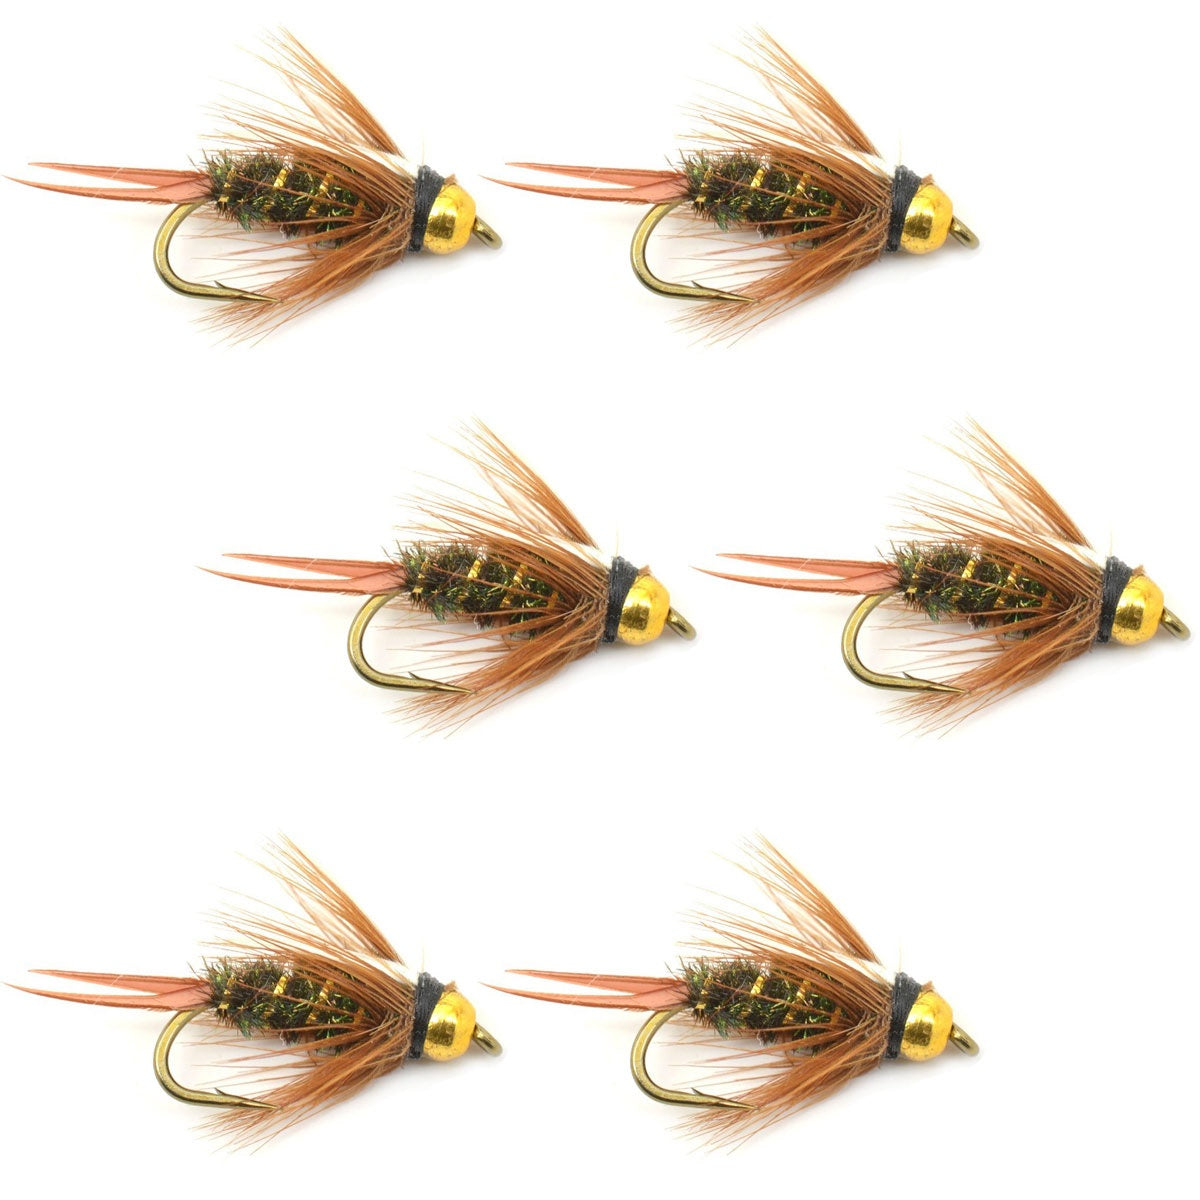 Moscas de pesca con mosca - Ninfa Príncipe con cabeza de cuentas - Juego de 6 moscas para trucha húmeda